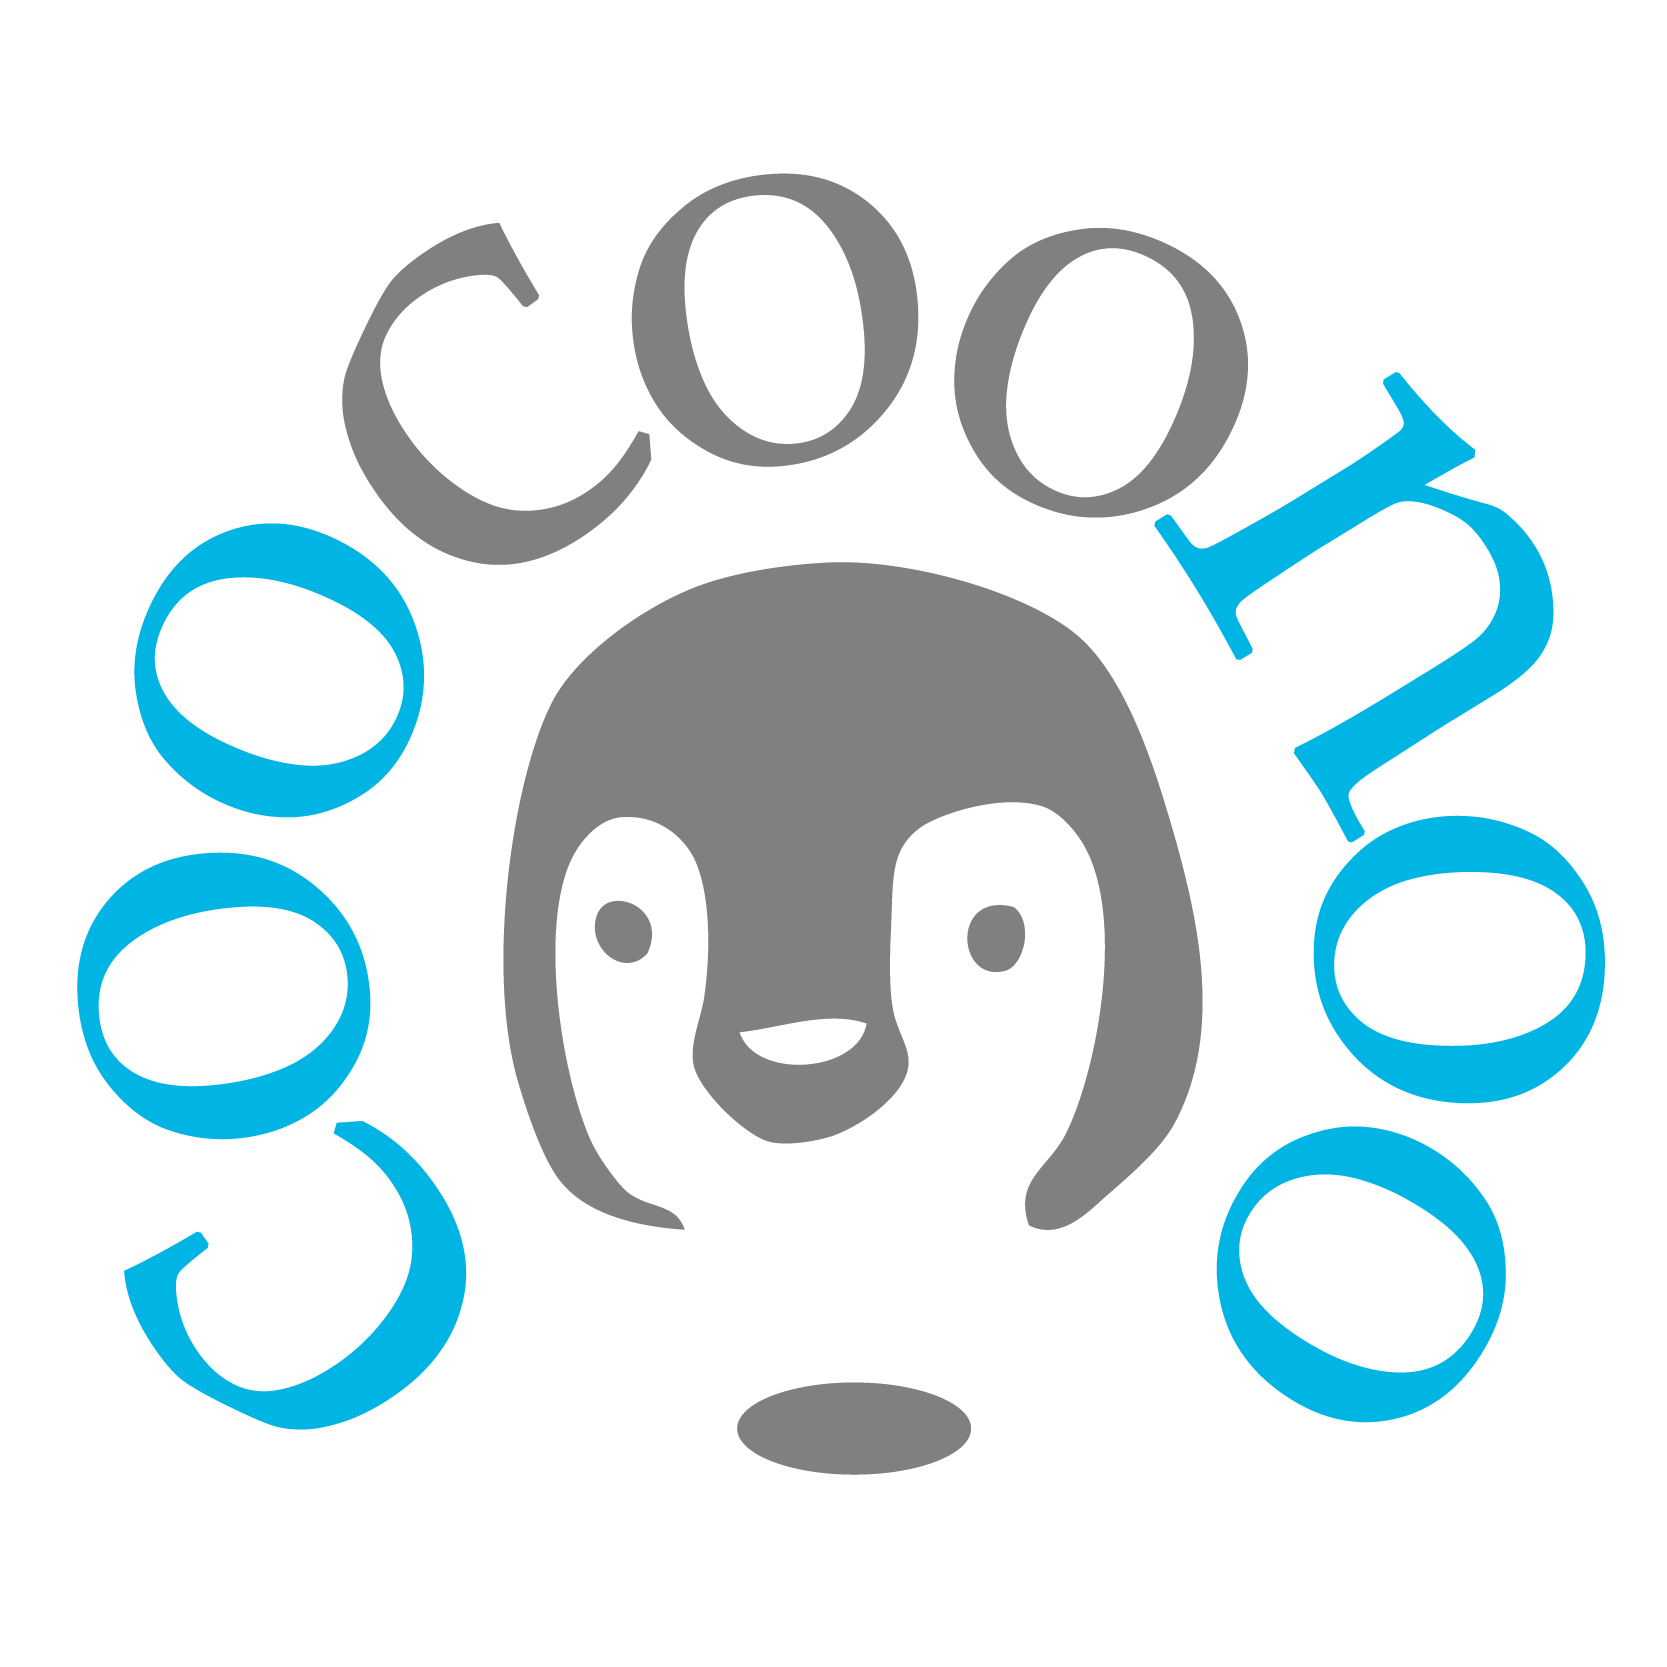 CooCooNoo